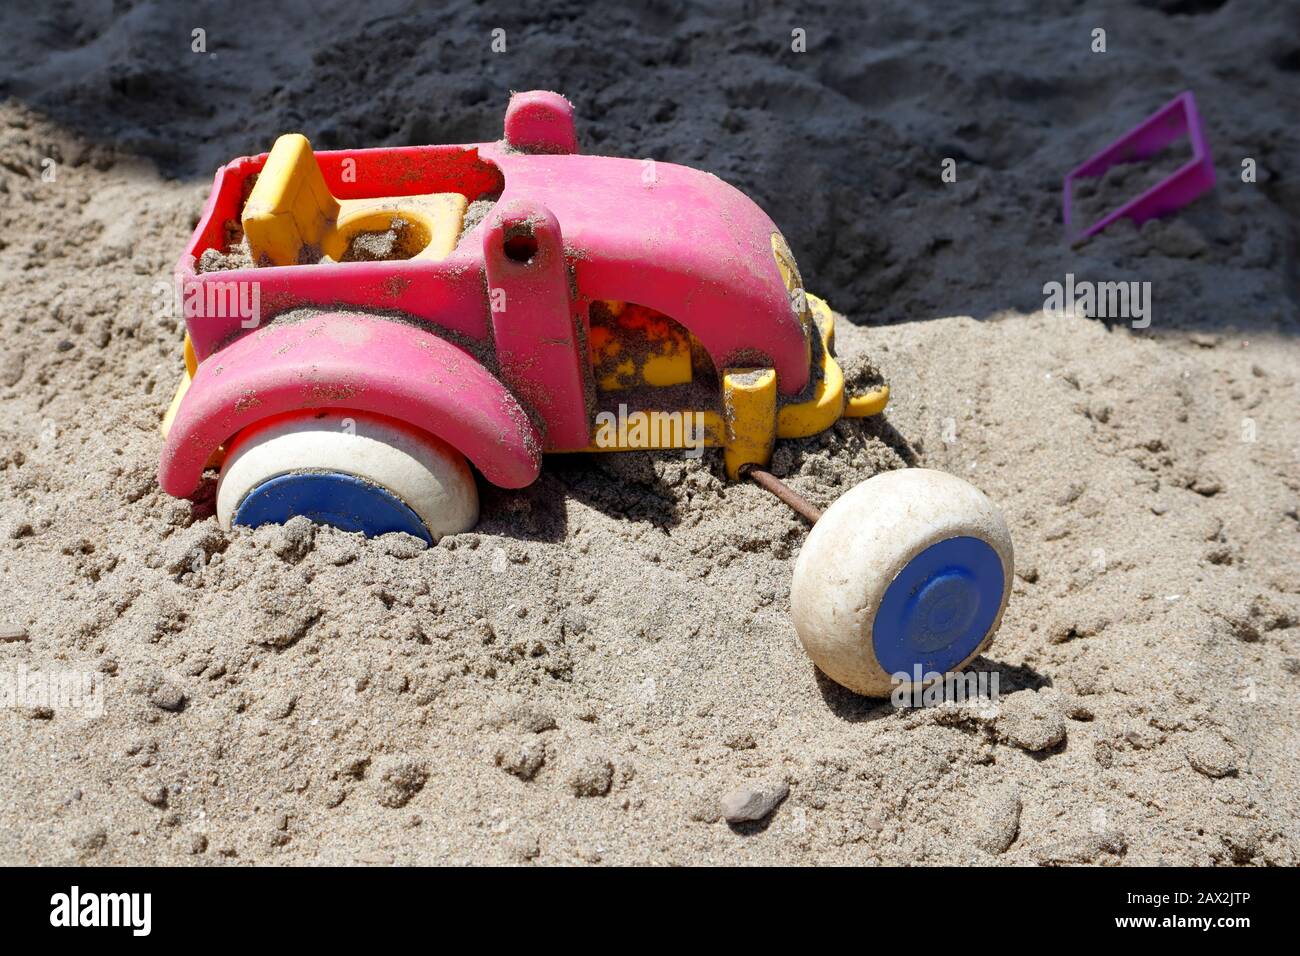 ¡las ruedas se apagaron! Atascado en un ruto, este tractor de juguete en la fosa de arena parece haber encontrado la misión pesada ir y ha arrojado en la toalla Foto de stock